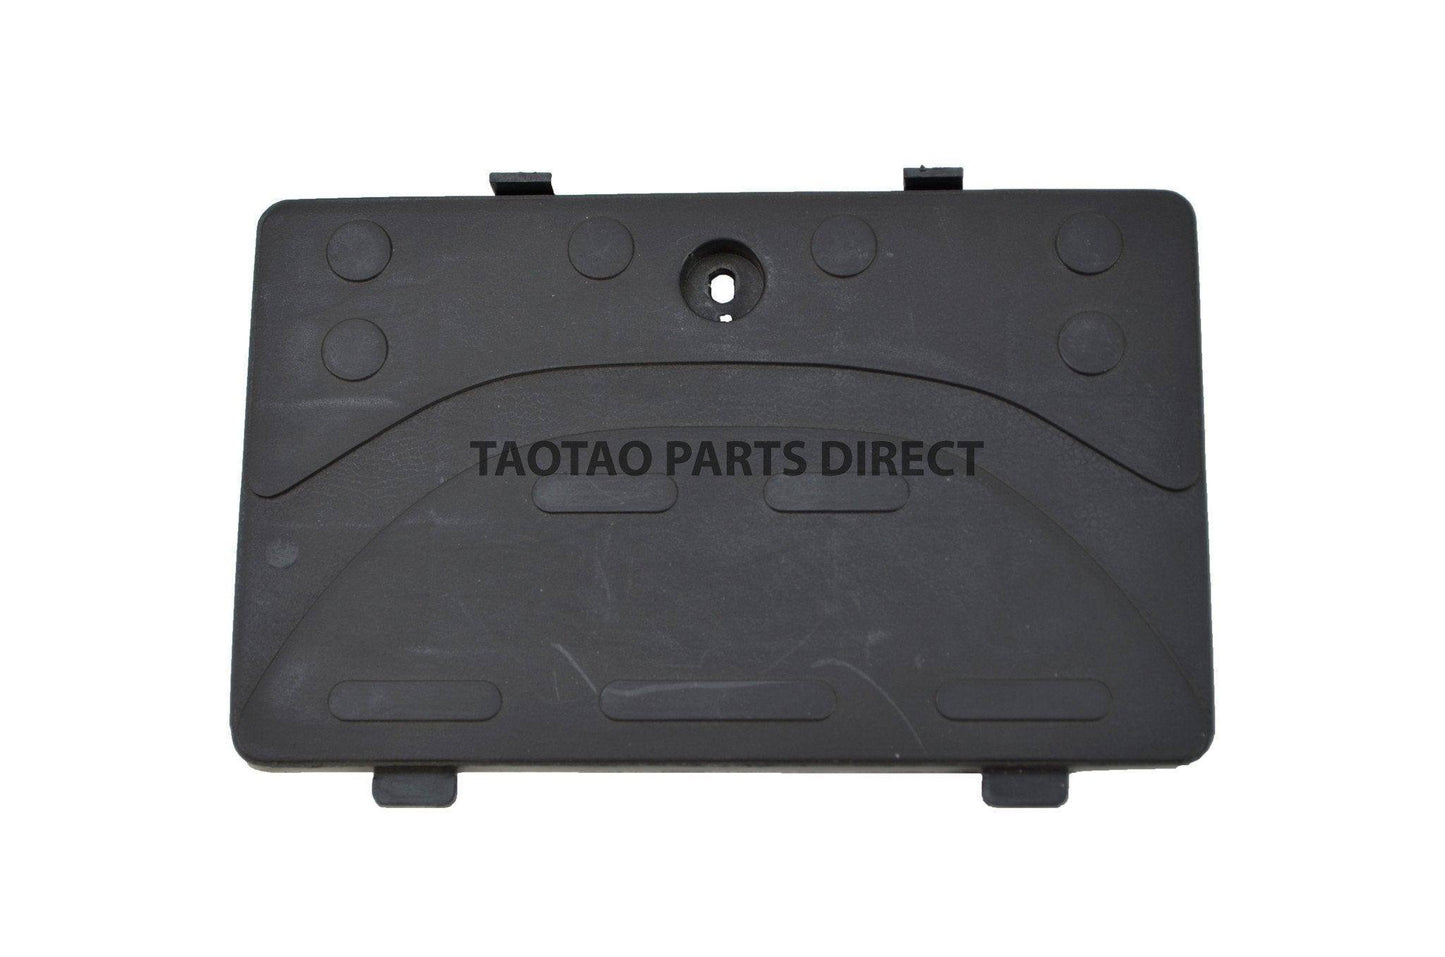 Powermax 150 Battery Door Cover - TaoTao Parts Direct